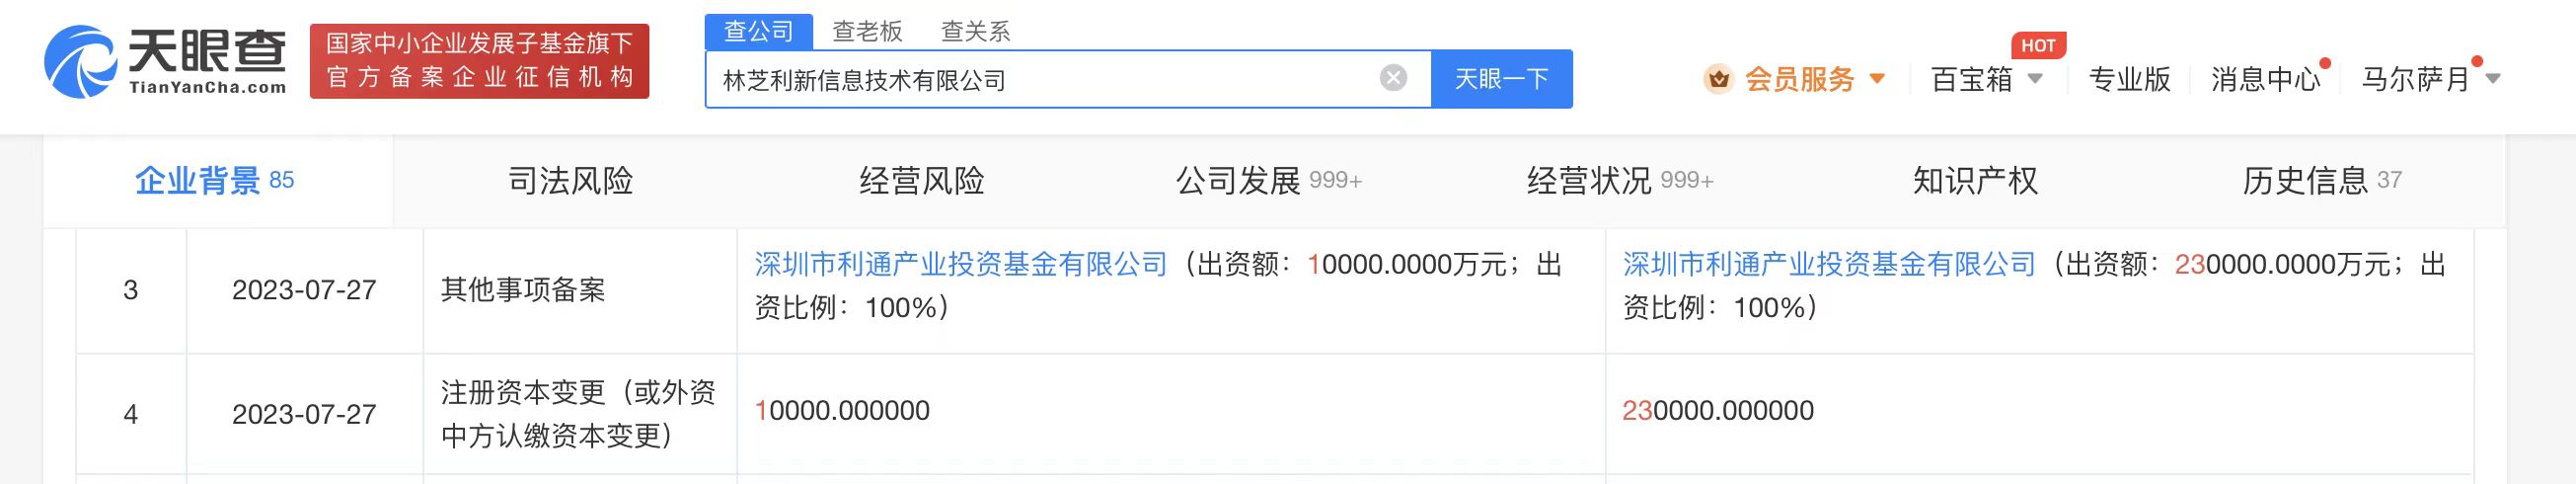 腾讯旗下林芝利新增资至23亿